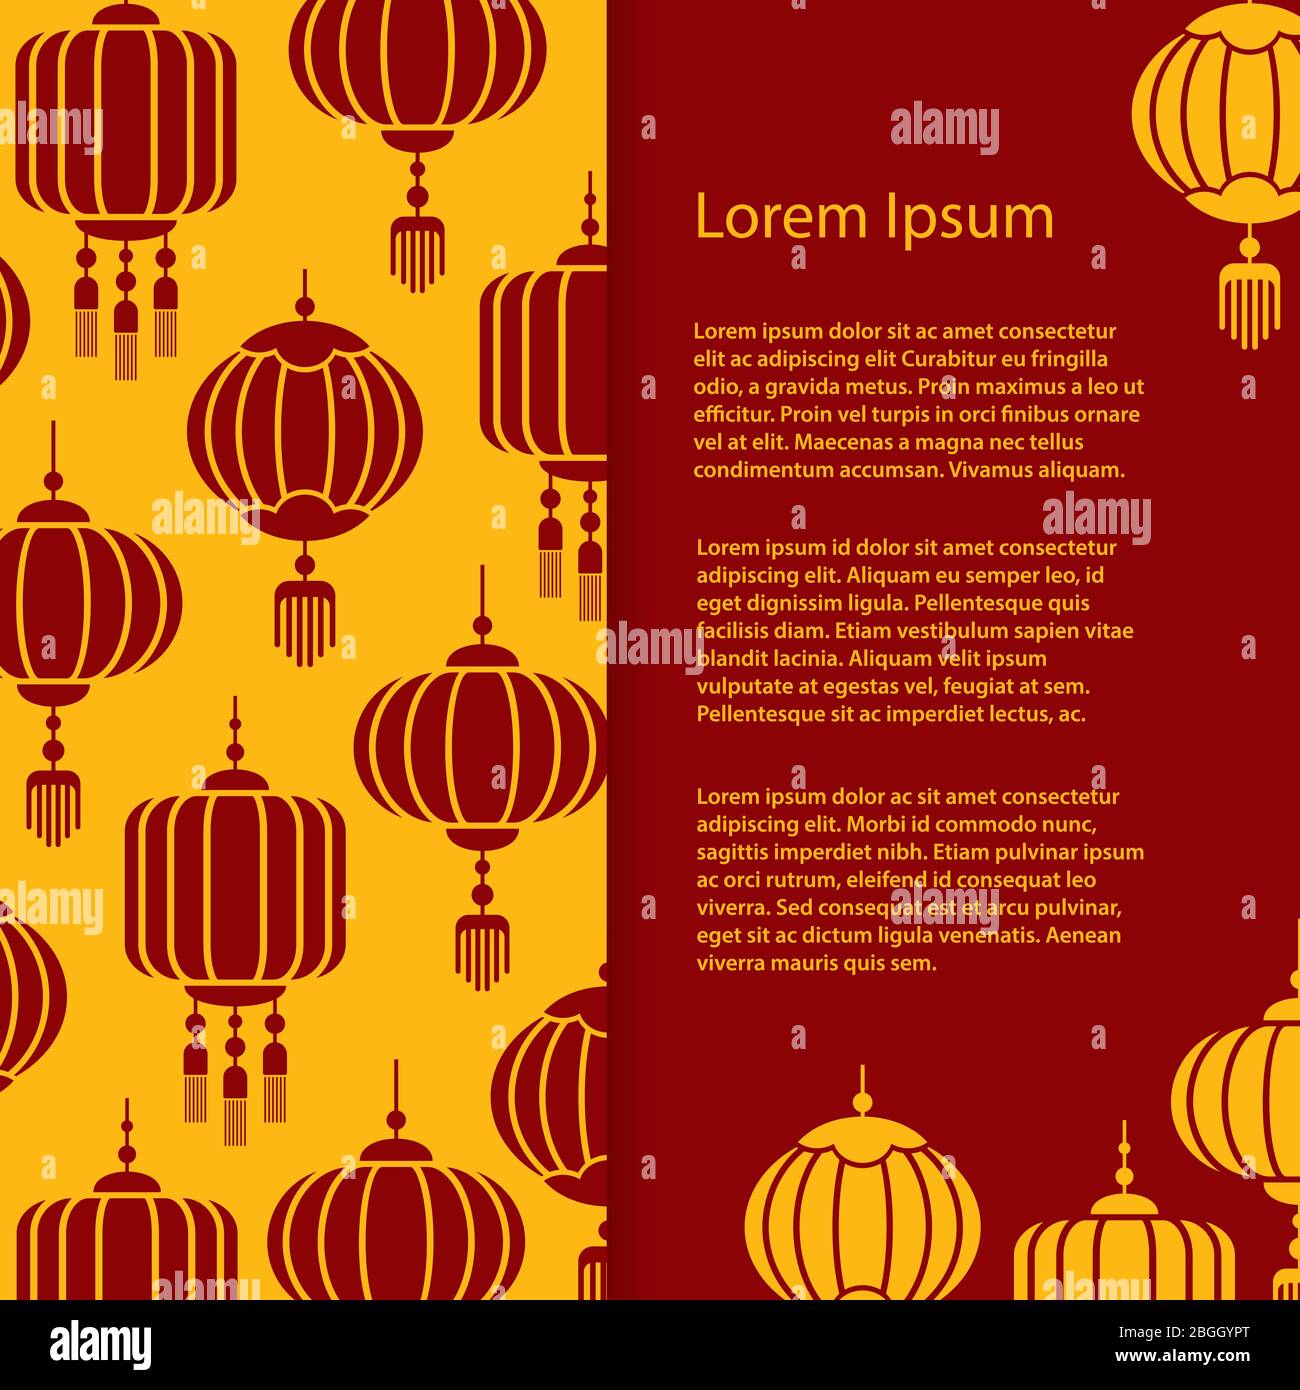 Motif bannière et affiche asiatiques. Illustration de fond de lampes vectorielles chinoises et japonaises Illustration de Vecteur